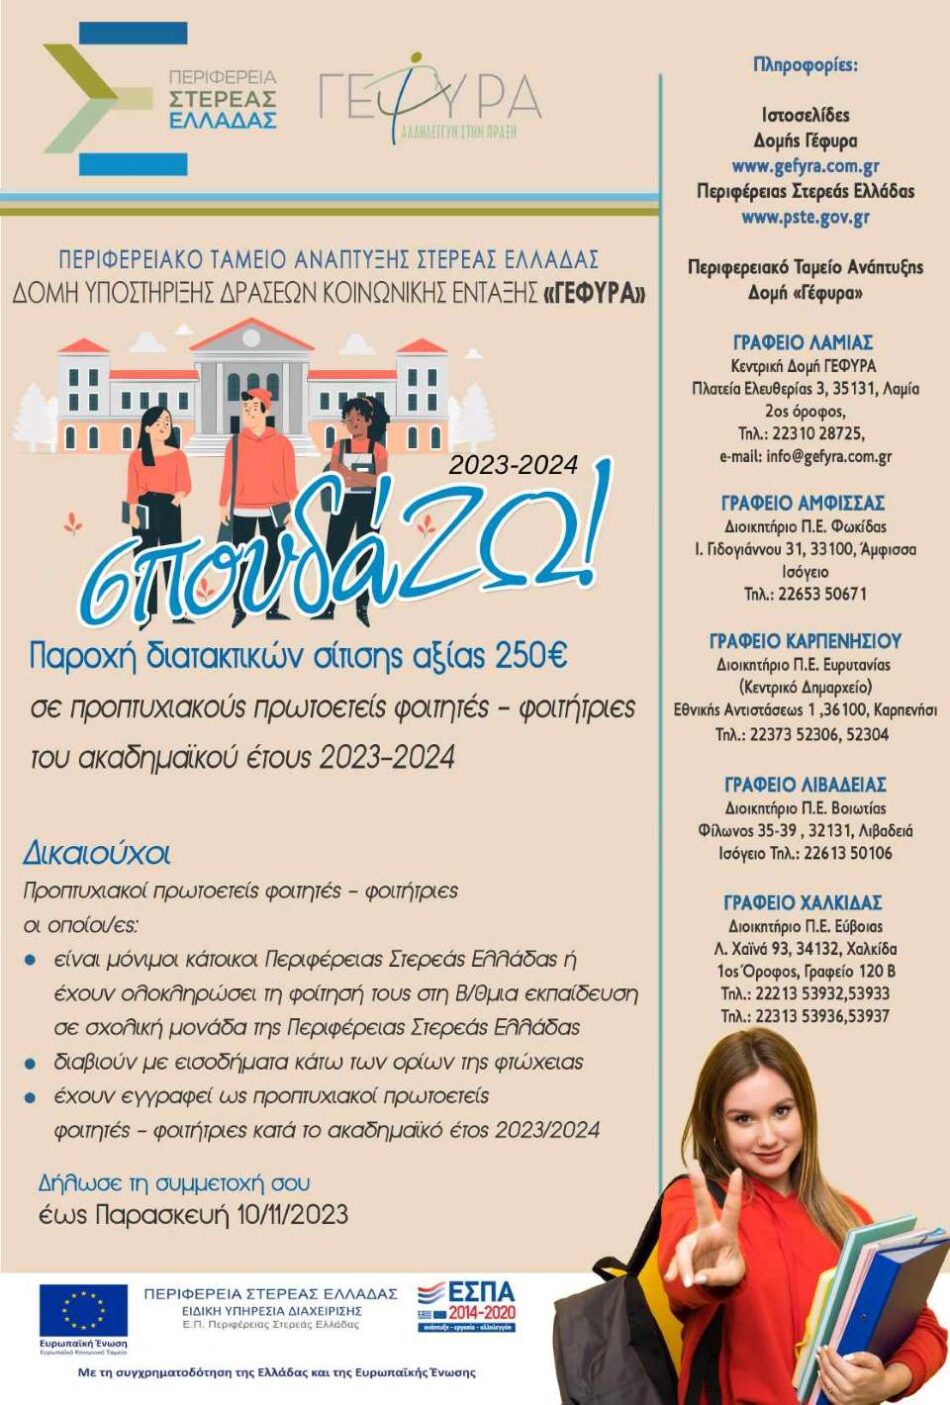 Περιφέρεια Στερεάς Ελλάδας: Φοιτητικό επίδομα 250€ για 4η χρονιά μέσω της δράσης «σπουδά…ΖΩ!» poster                  950x1405